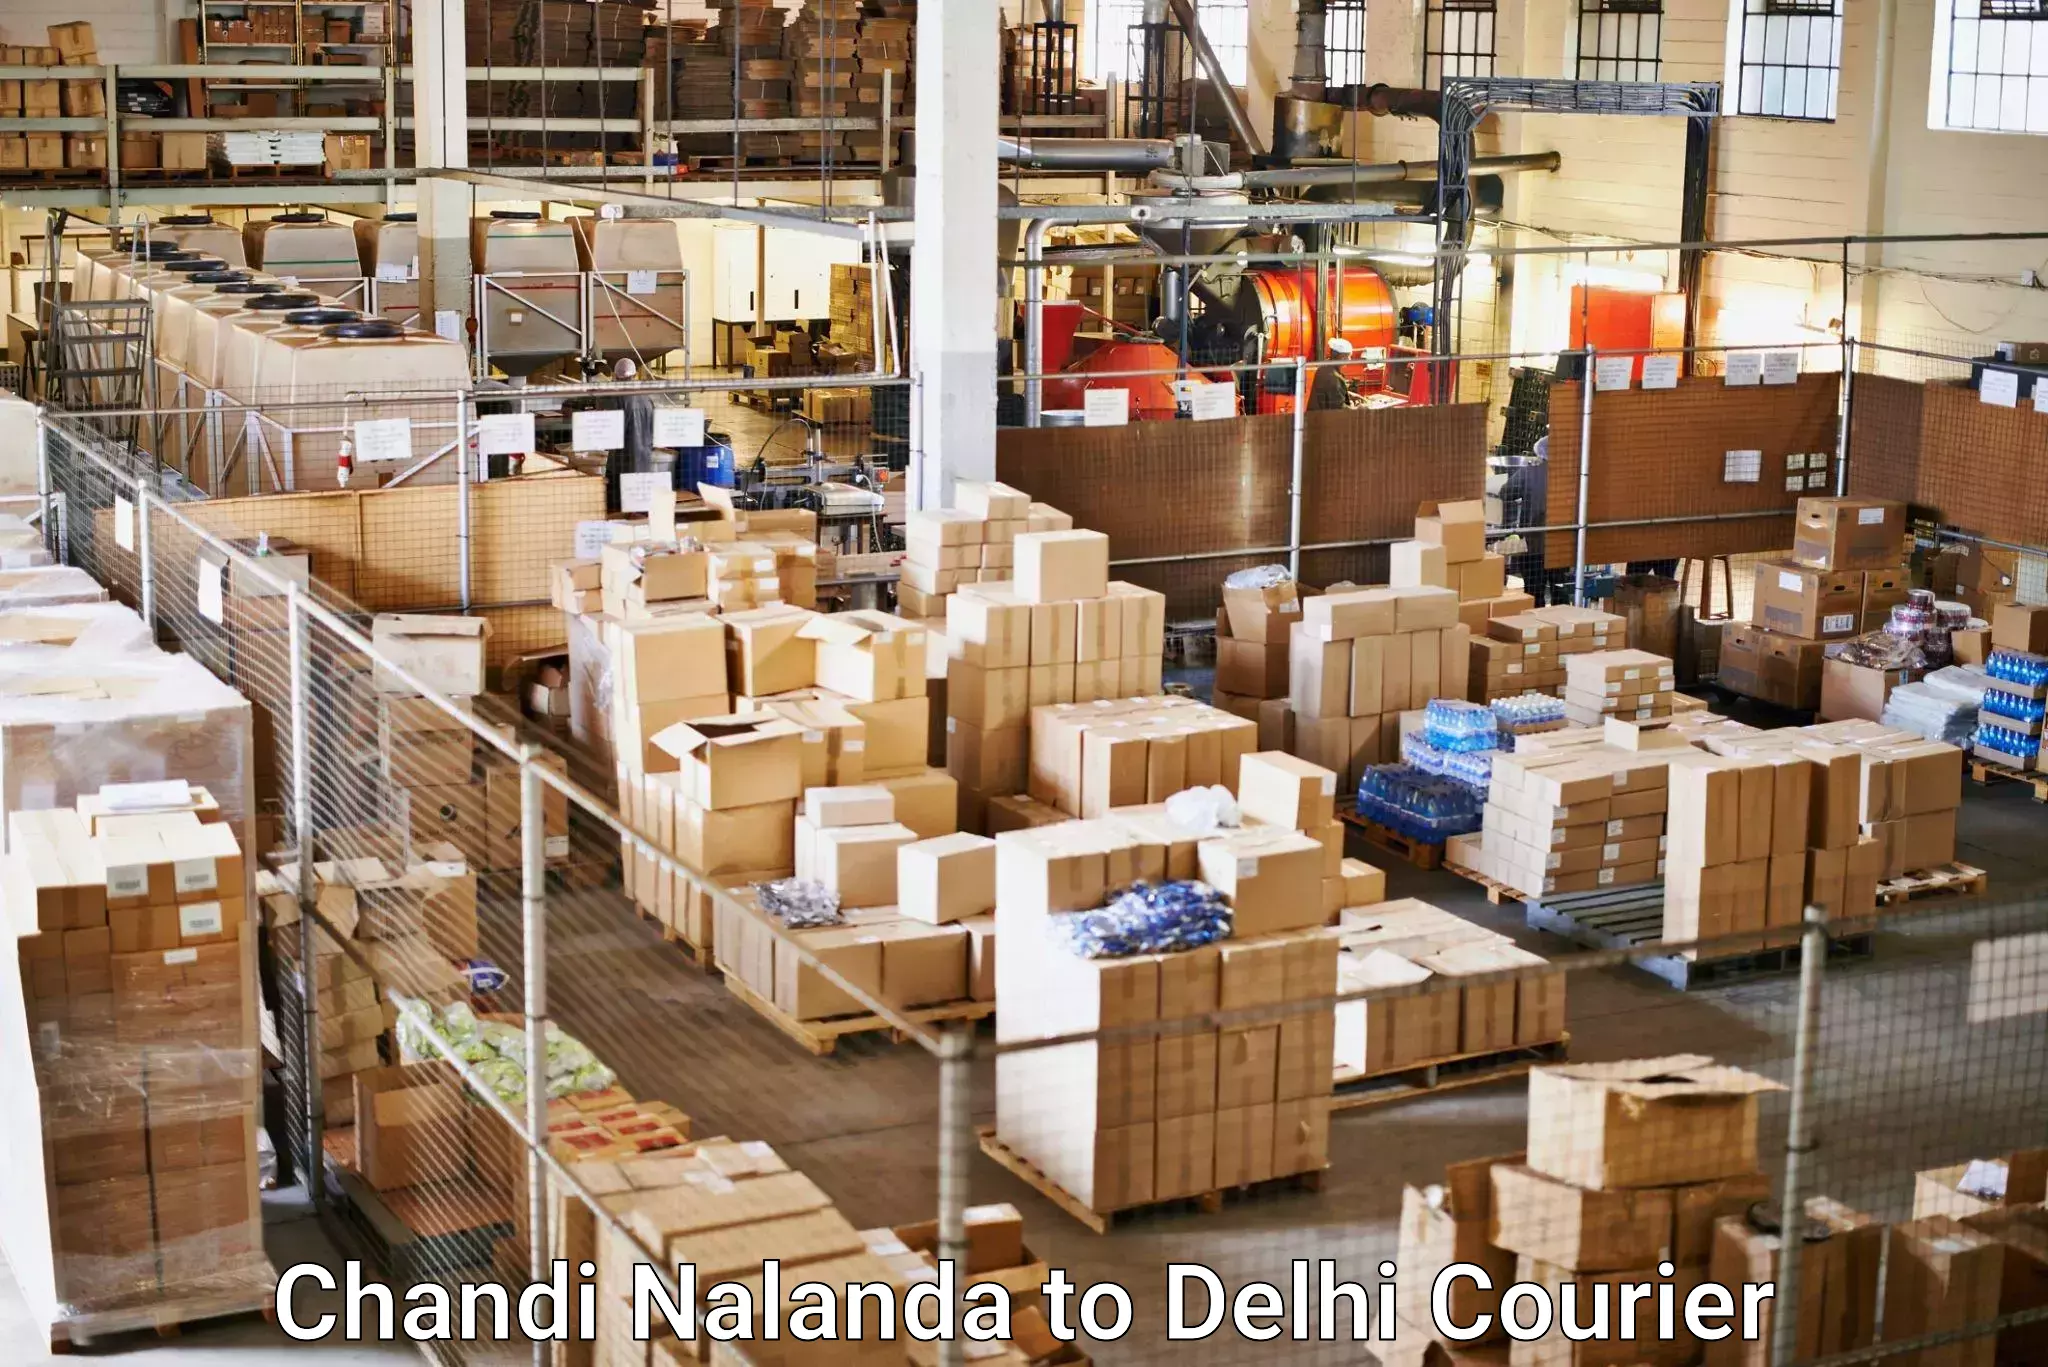 Holiday shipping services Chandi Nalanda to Jamia Millia Islamia New Delhi